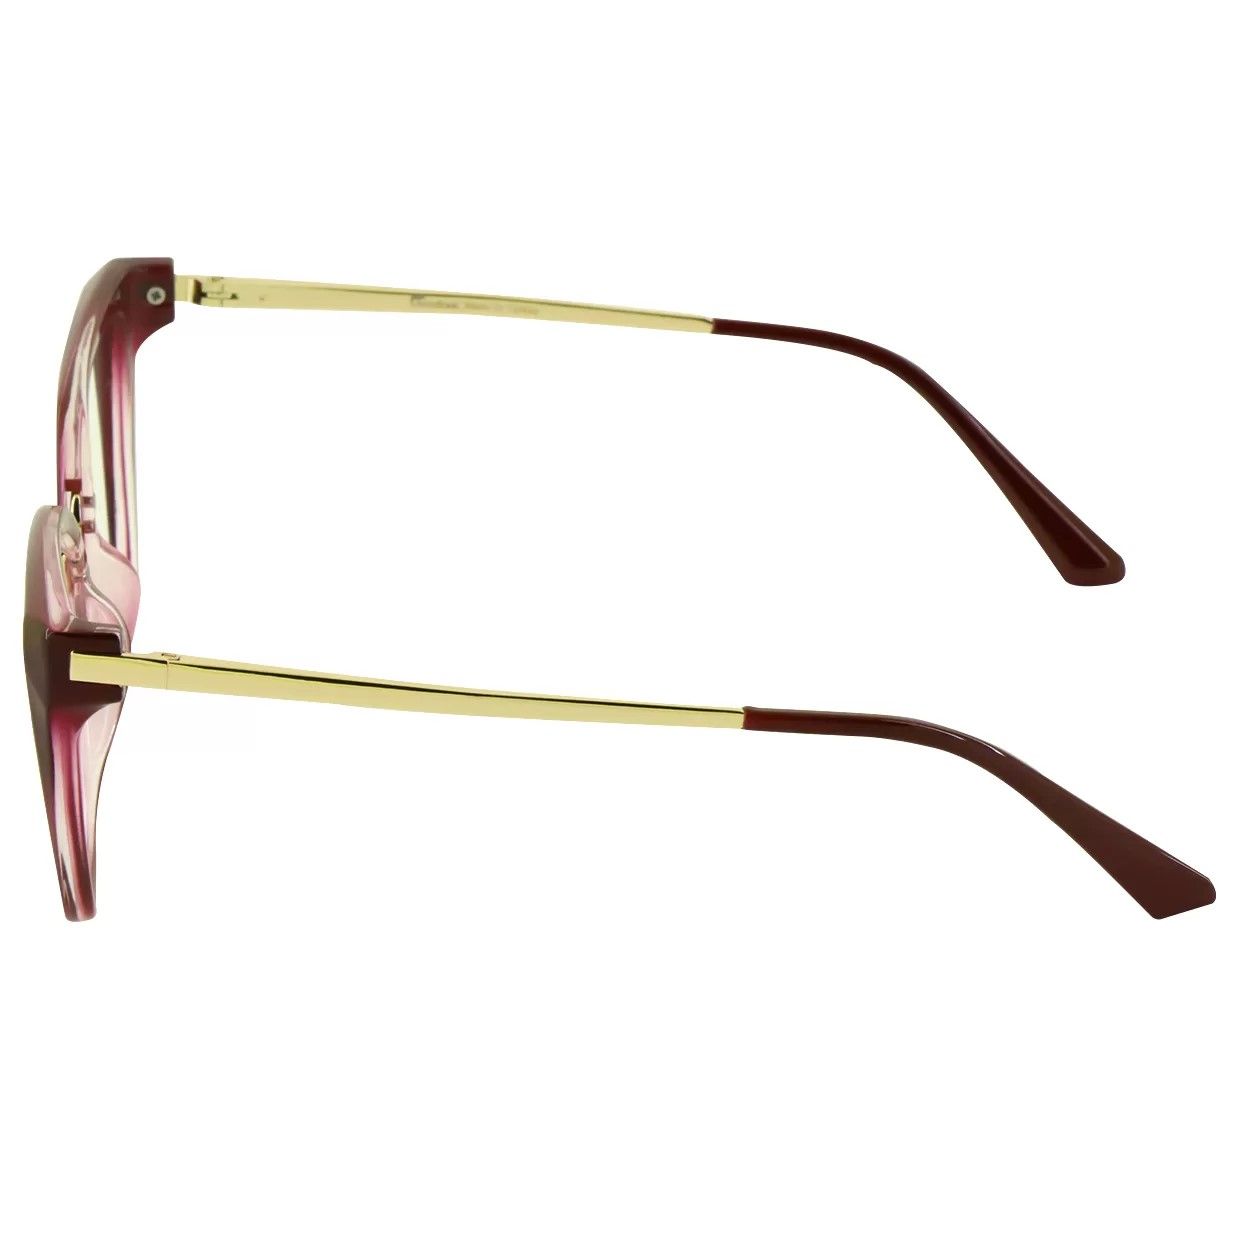 فریم عینک طبی گودلوک مدل 95301 -  - 4